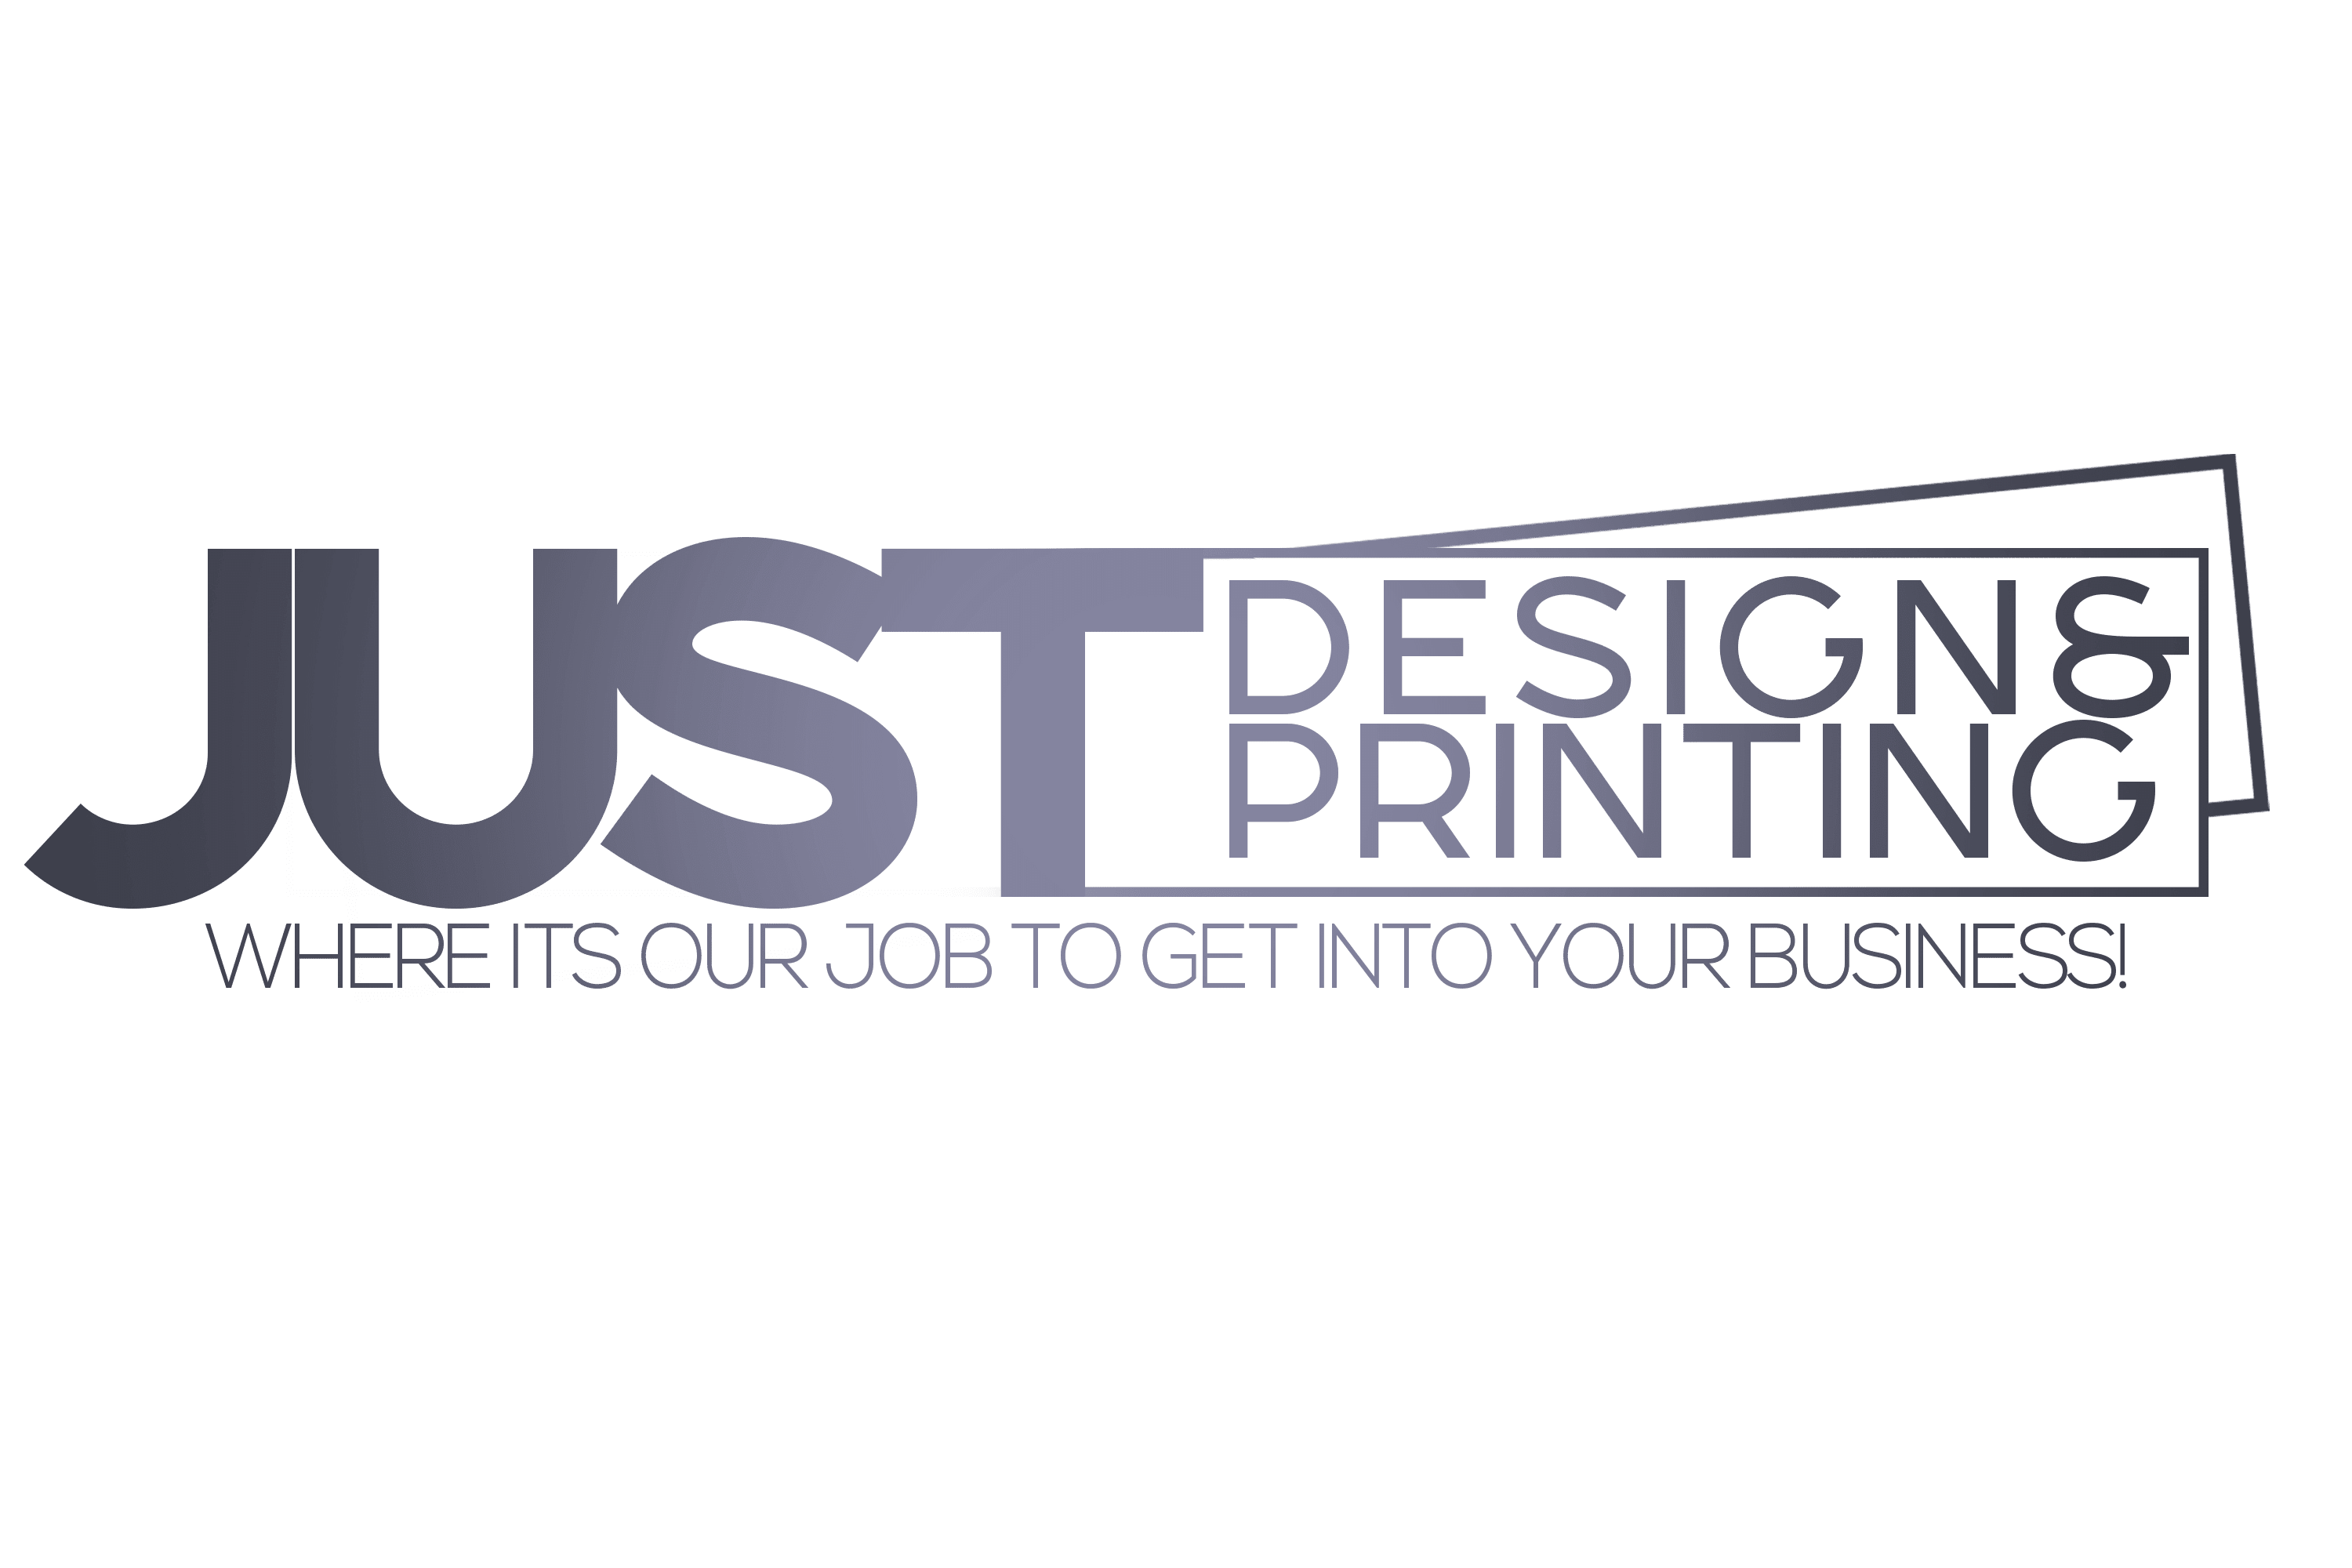 Just Design & Printing